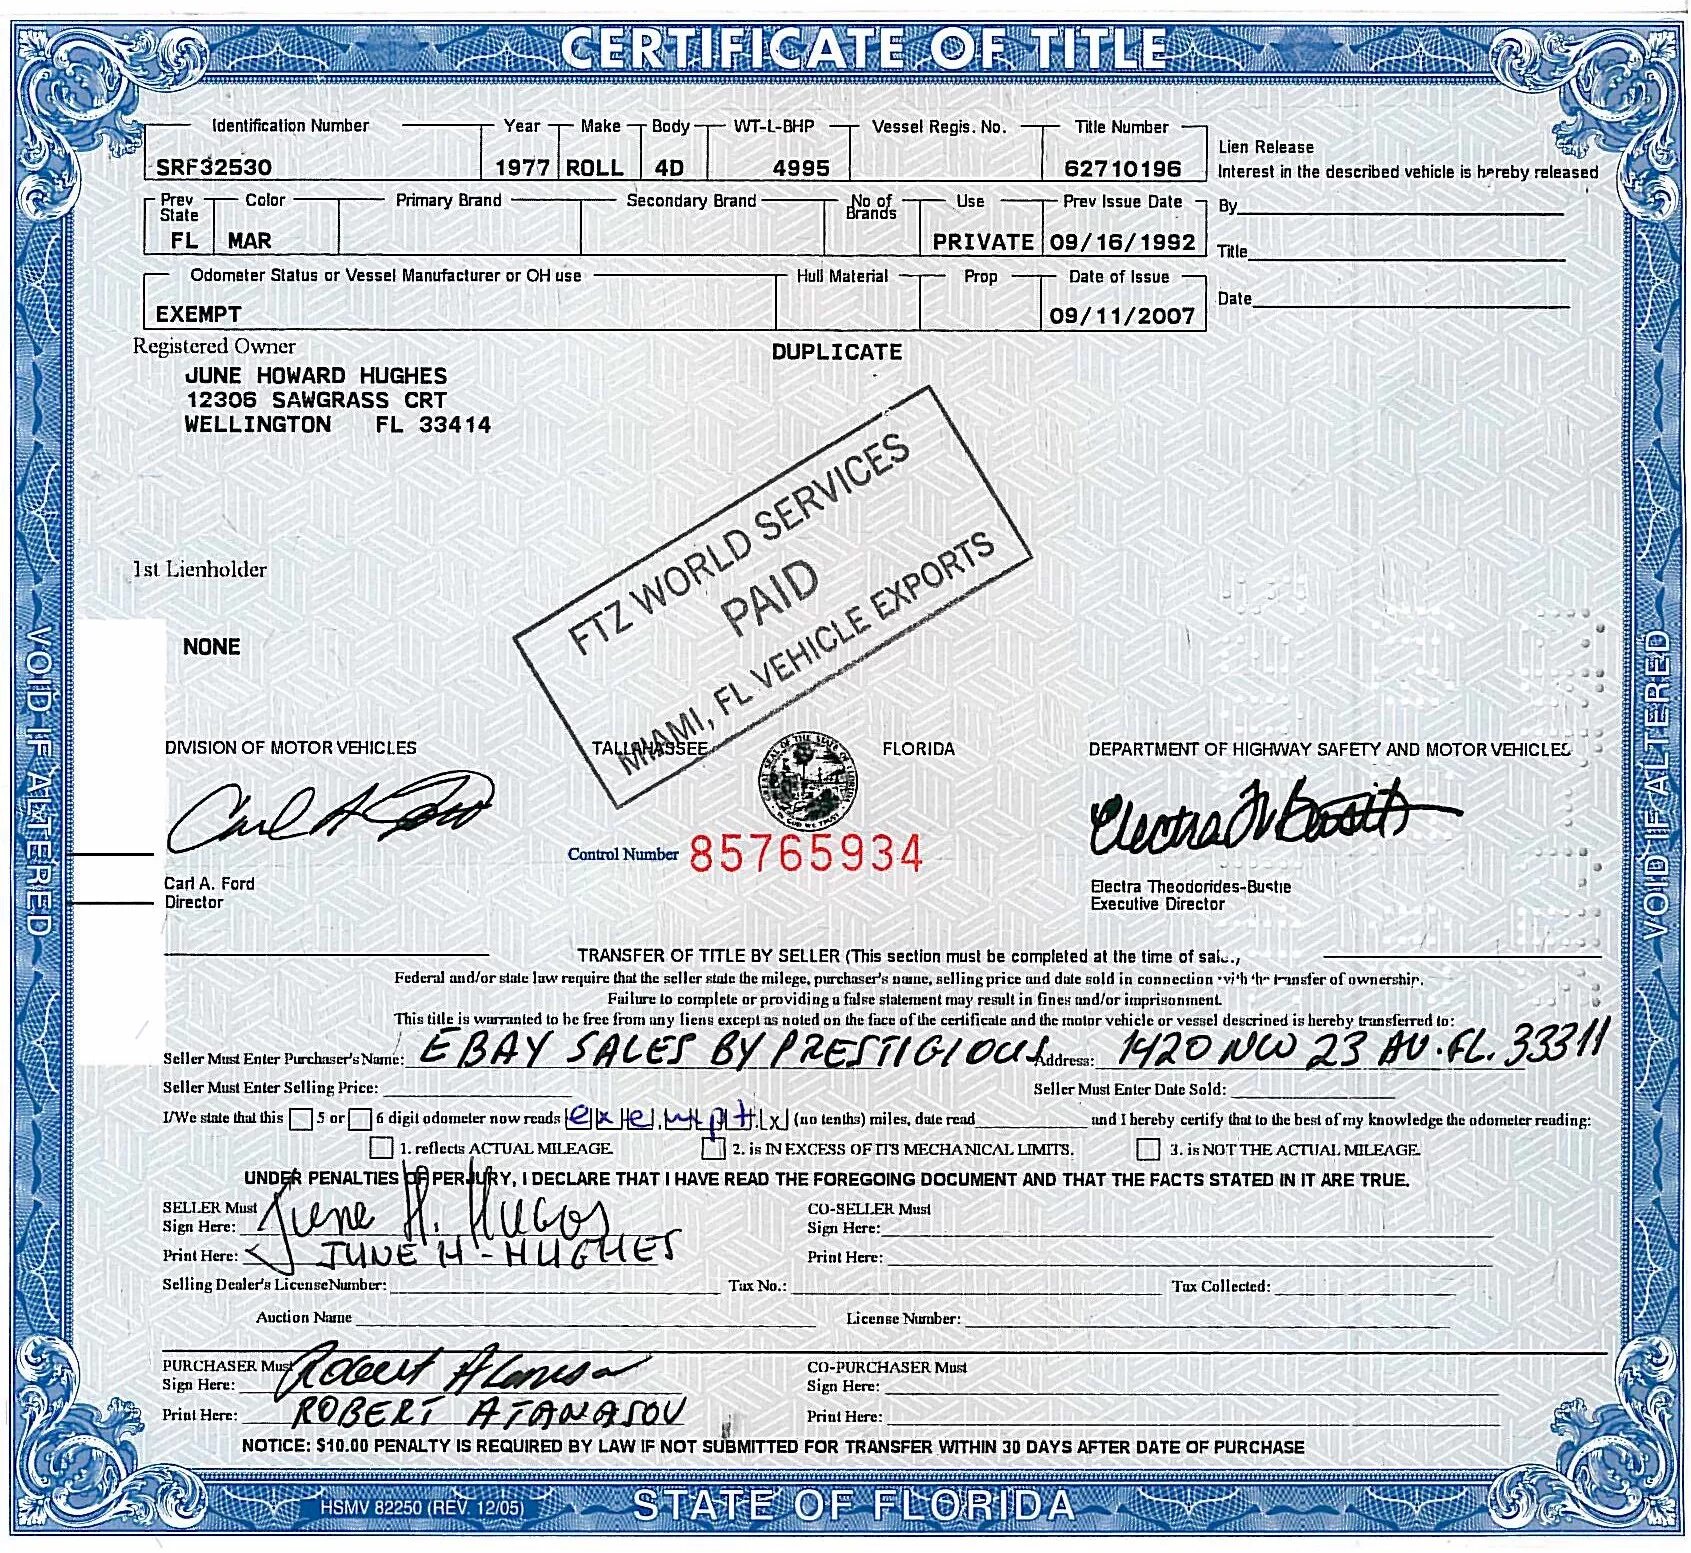 Title на машину. Тайтл на авто в США. Vehicle Certificate of title. Certificate of title на автомобиль.